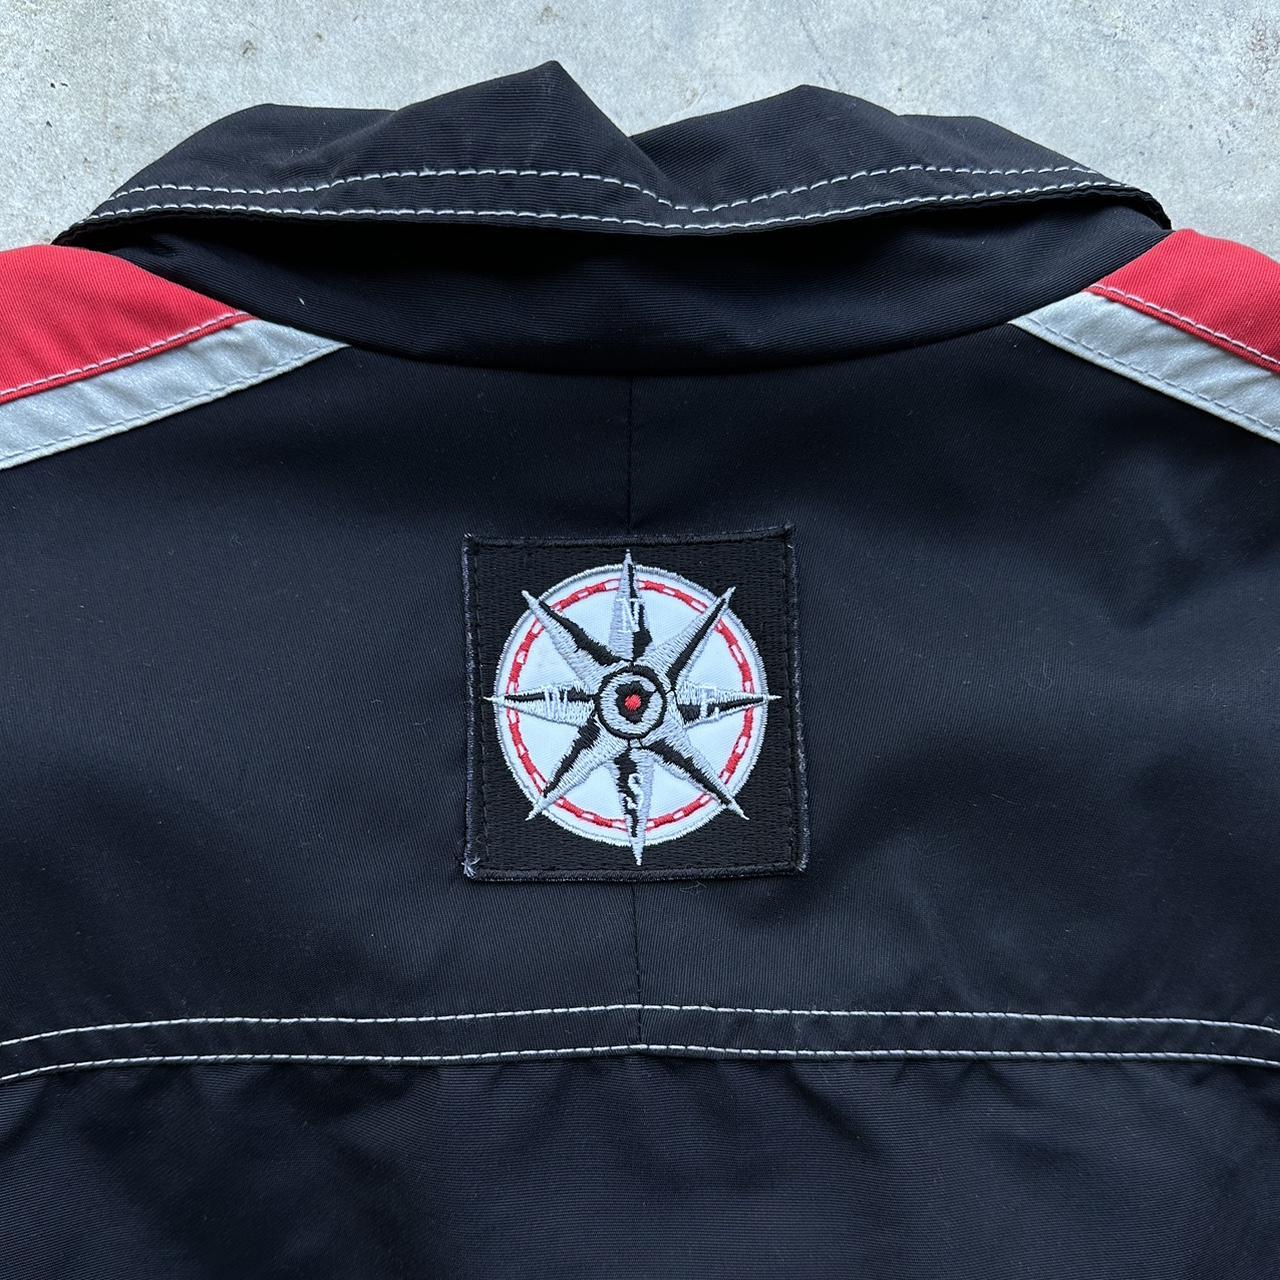 vintage Marlboro racing jacket, size medium, boxy